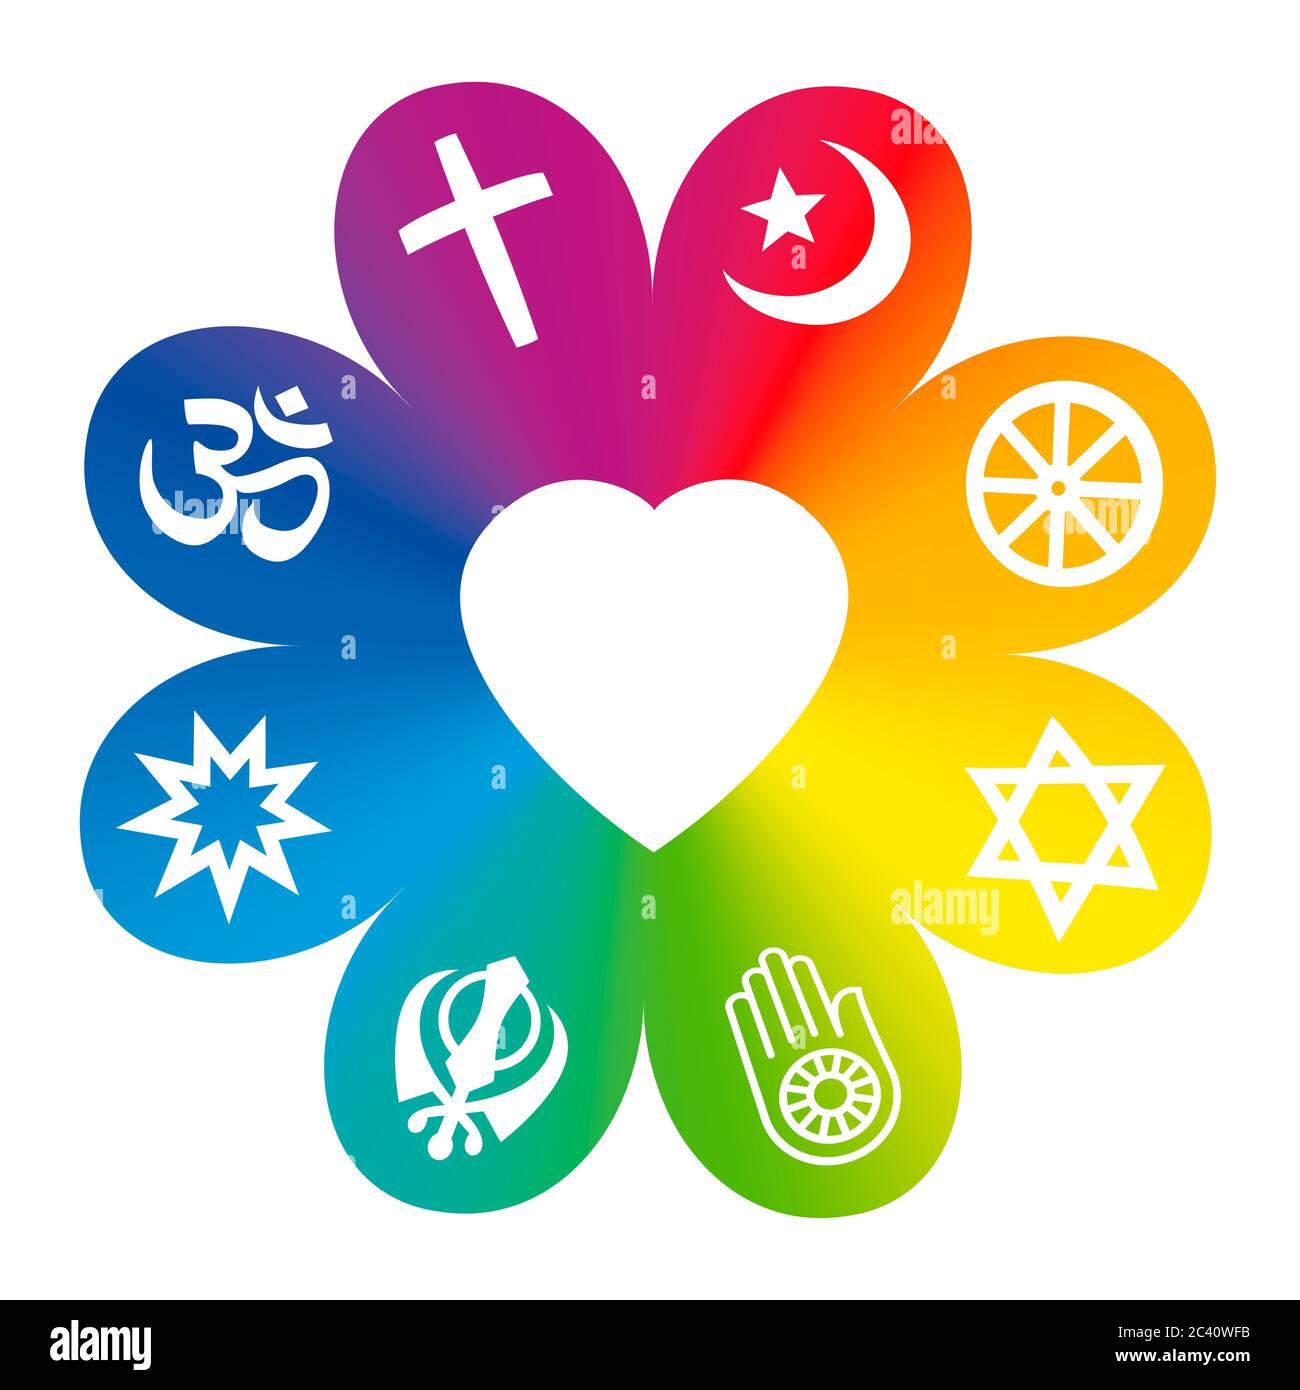 Weltreligionen. Symbole auf einer regenbogenfarbenen Blume mit einem Herz in der Mitte als Symbol für religiöse Einheit oder Gemeinsamkeit. Stockfoto